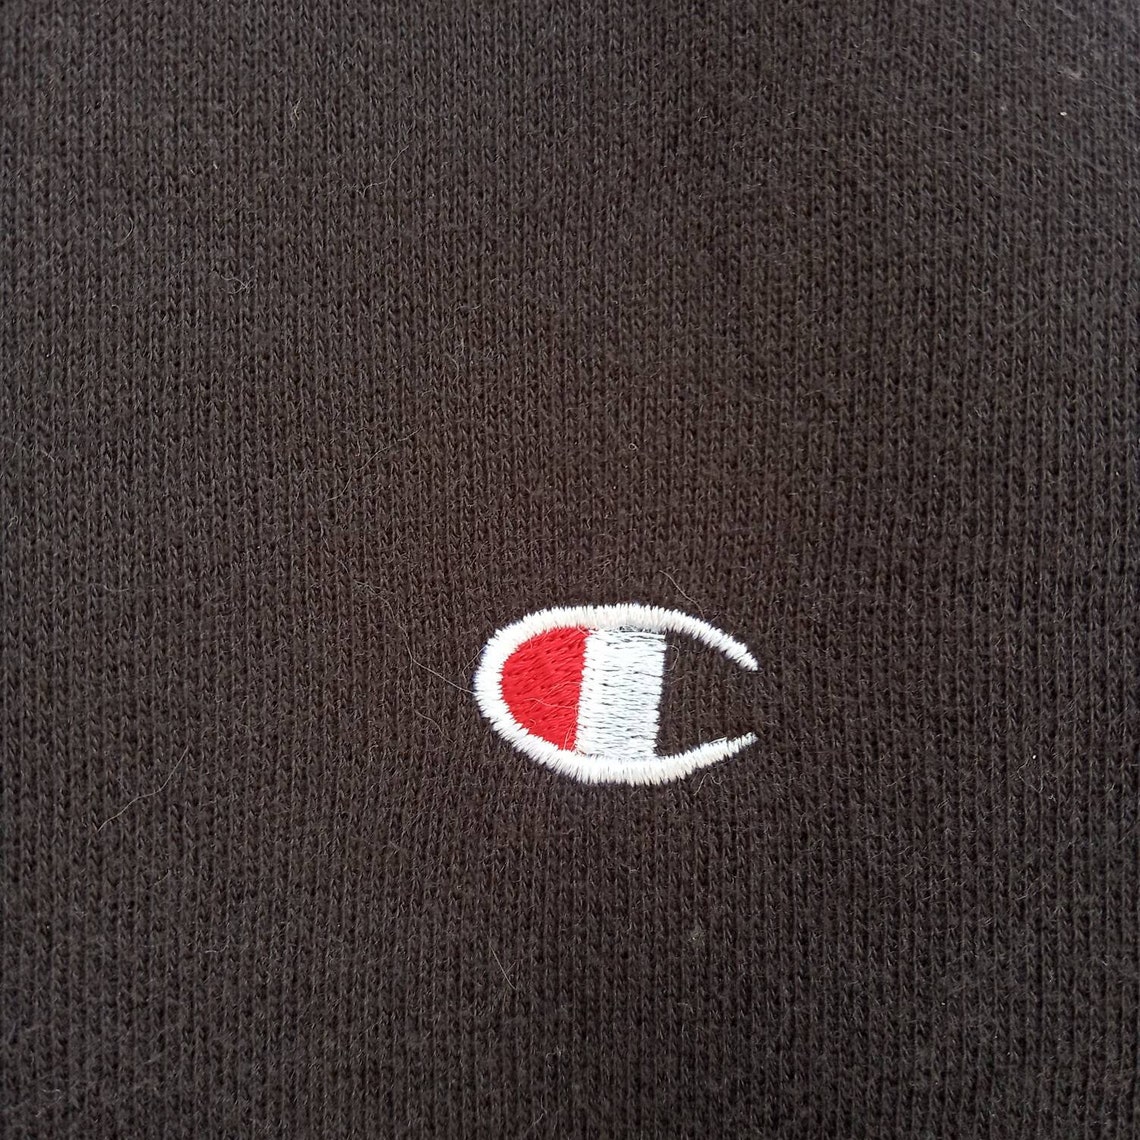 CHAMPION Embroidery Logo Sweatshirts Unisex Medium Size - Etsy